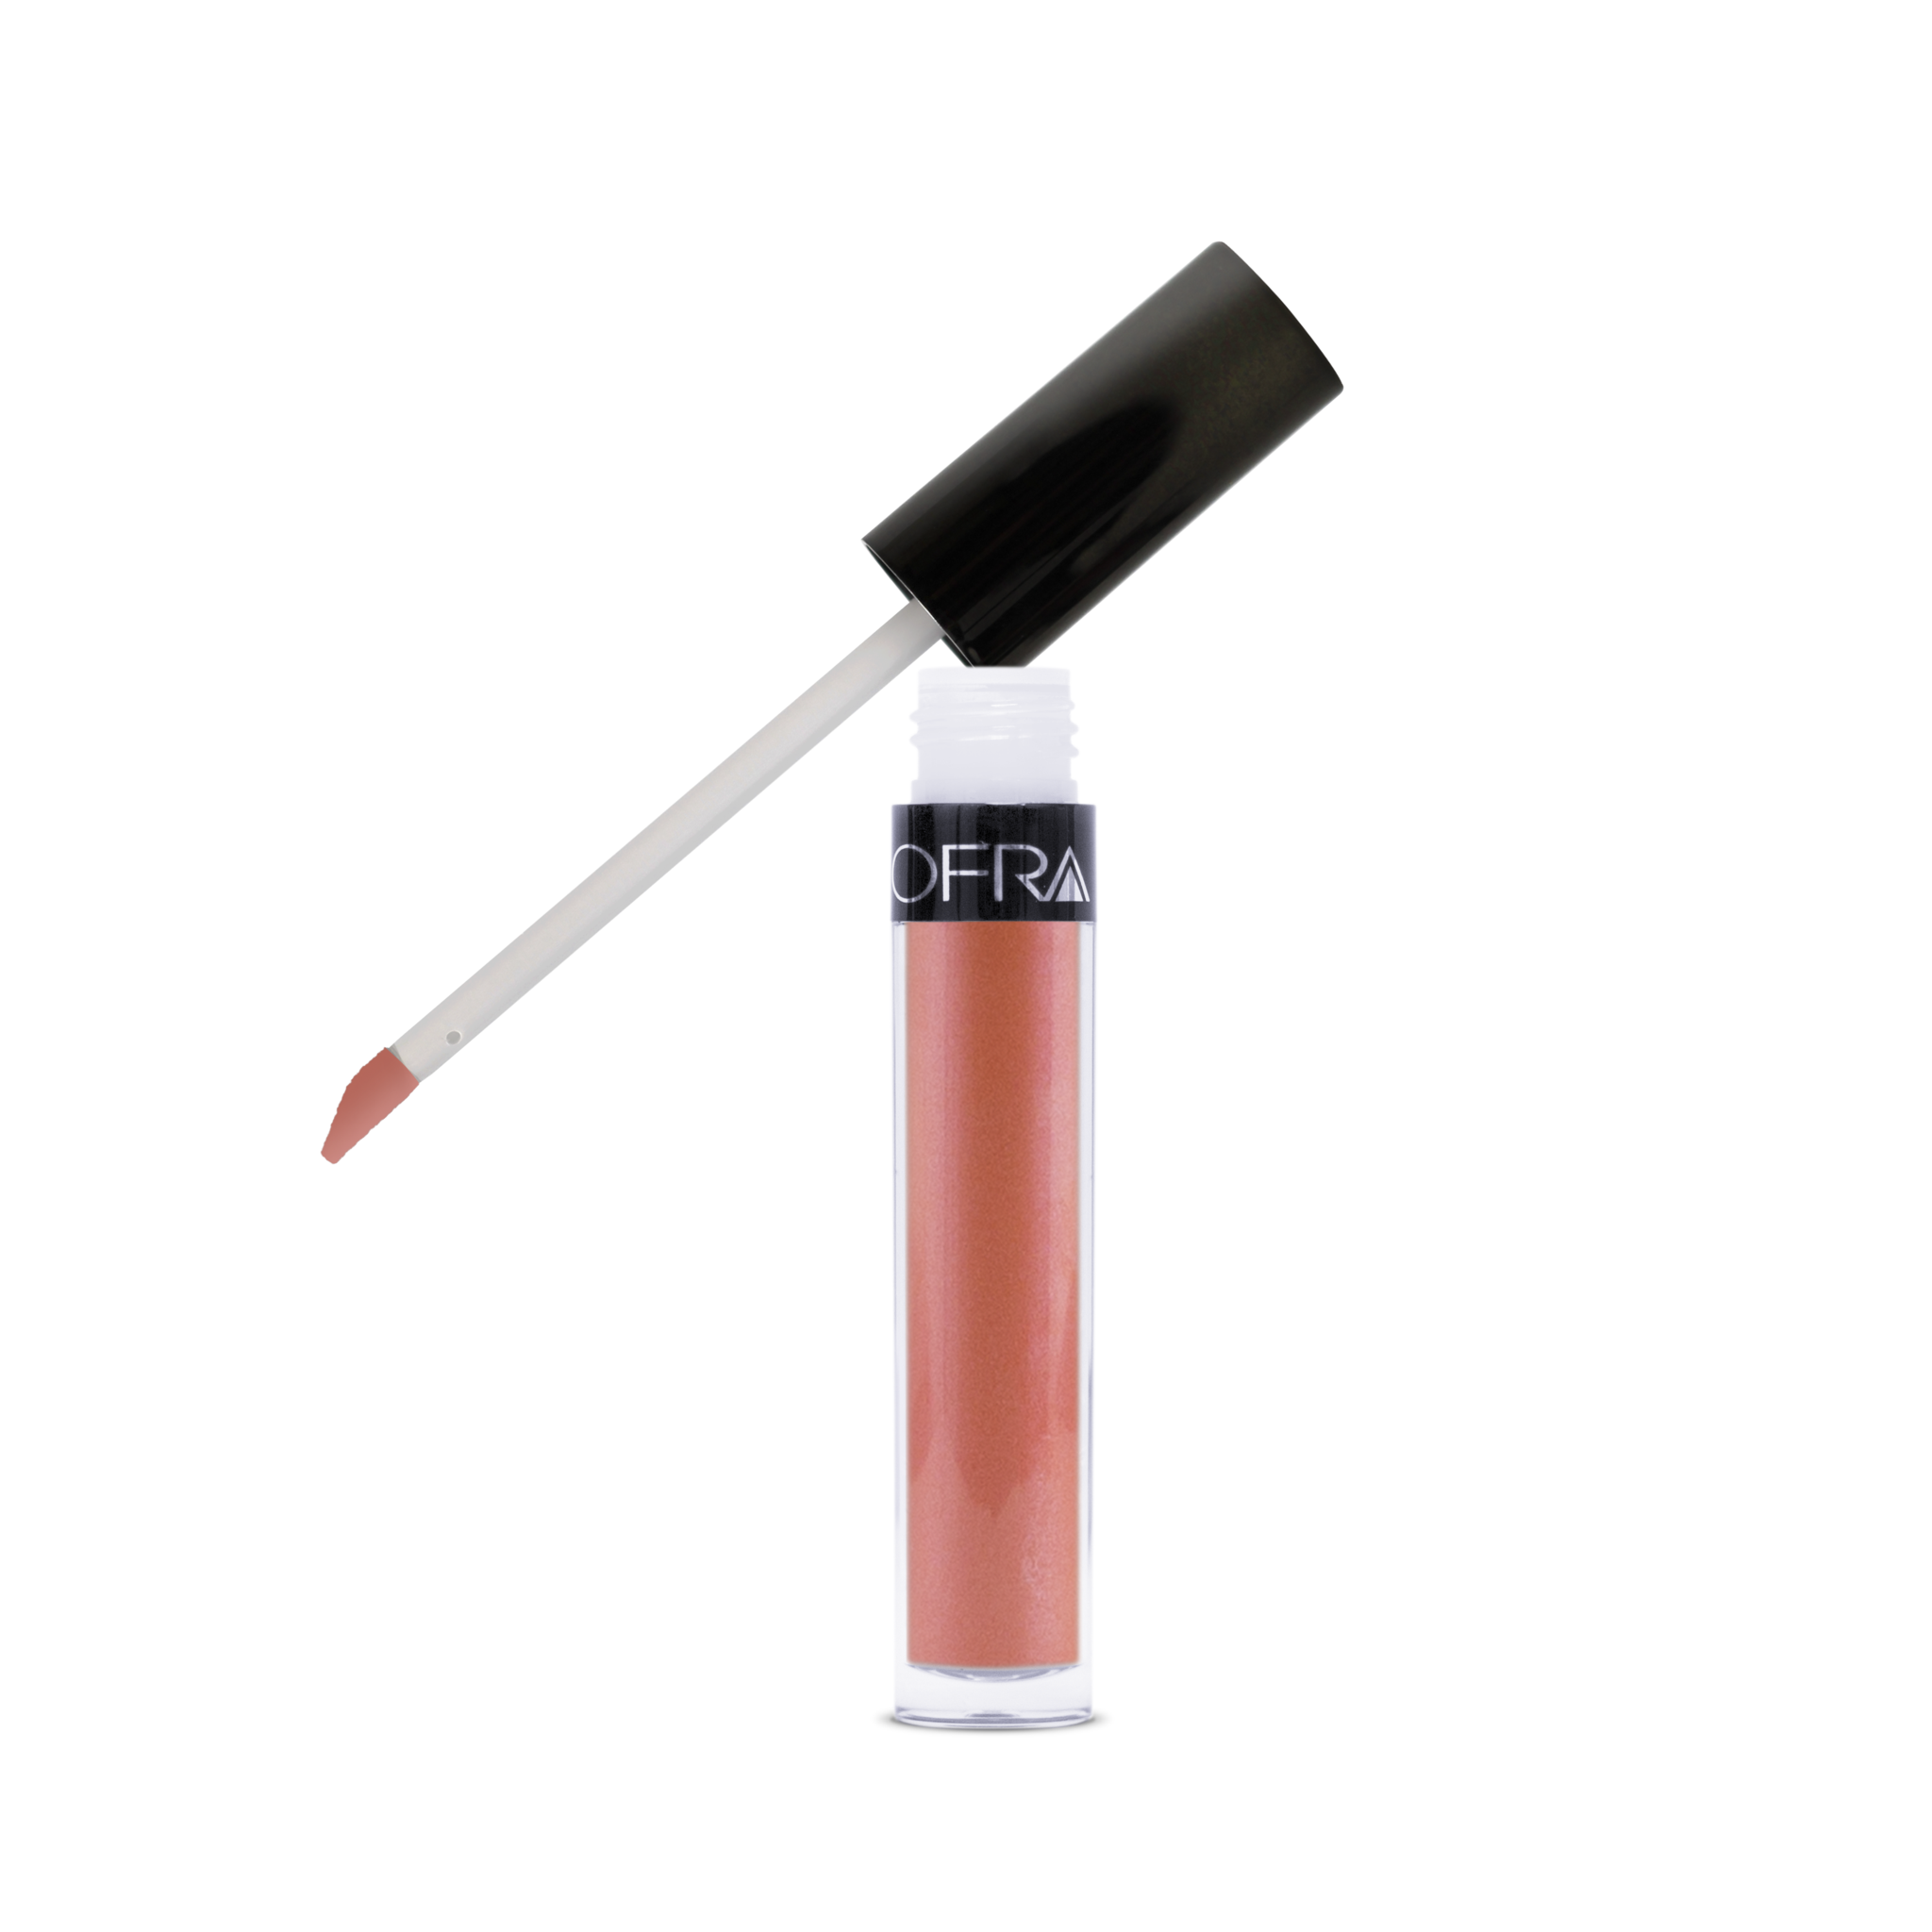 Ofra Cosmetics - Long Lasting Liquid Lipstick Spell by Nikkie Tutorials